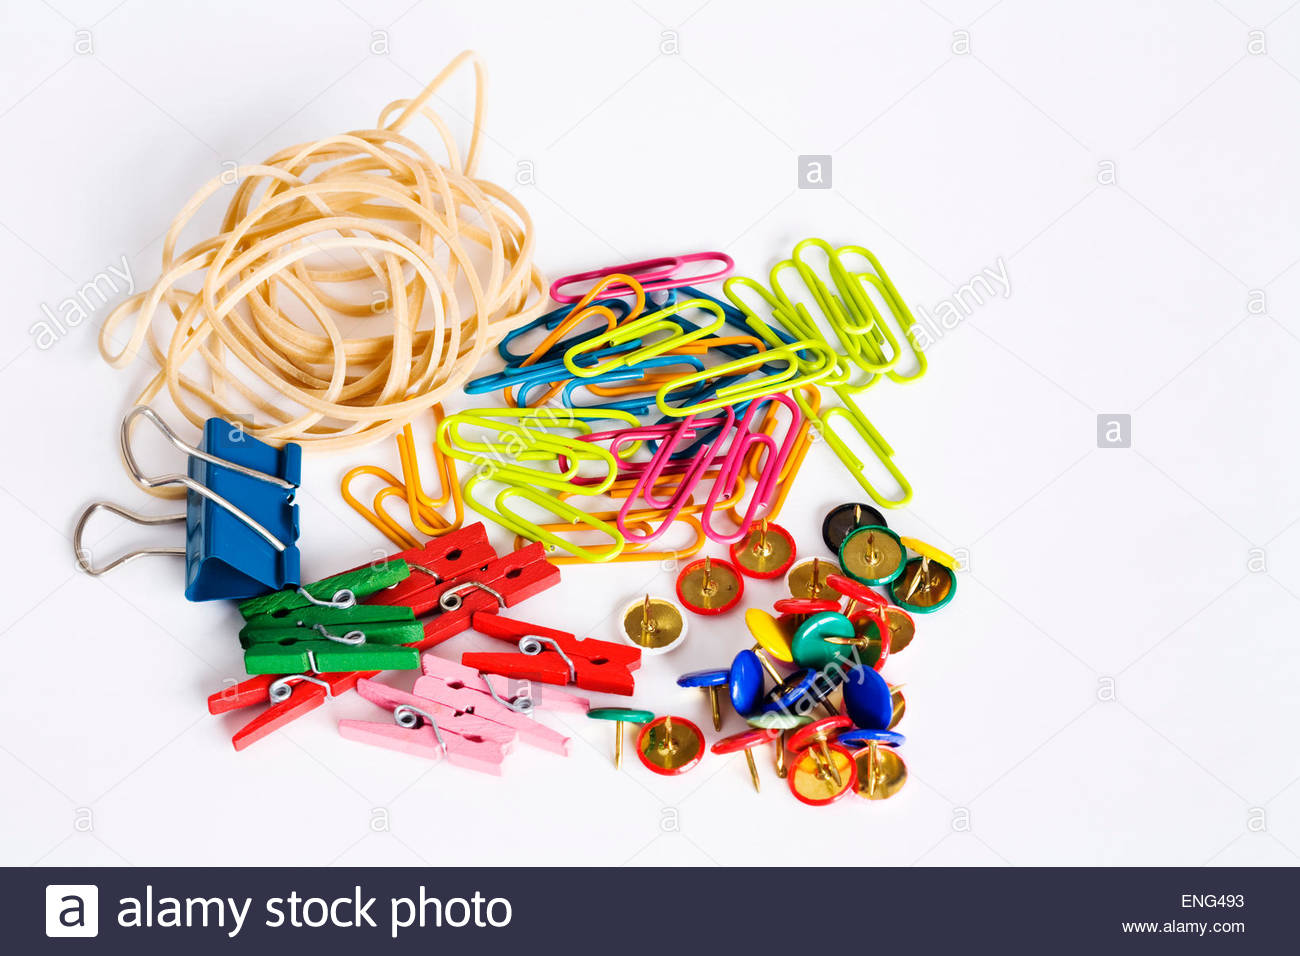 Elastic bands, bulldog clip, paper clips and drawing pins ...